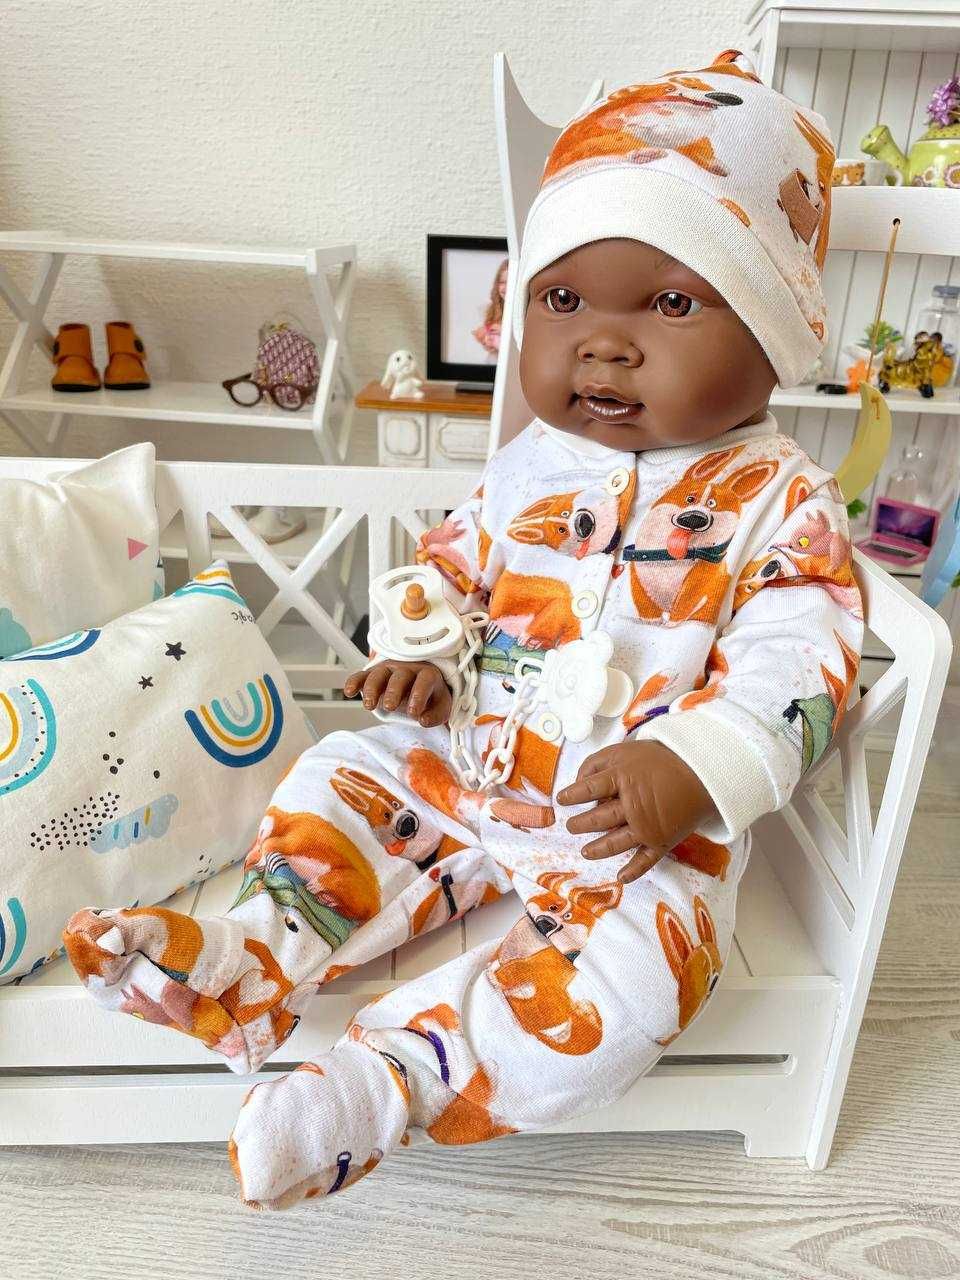 Пупс кукла афро Лоренс 45004 в одежде, 45 см